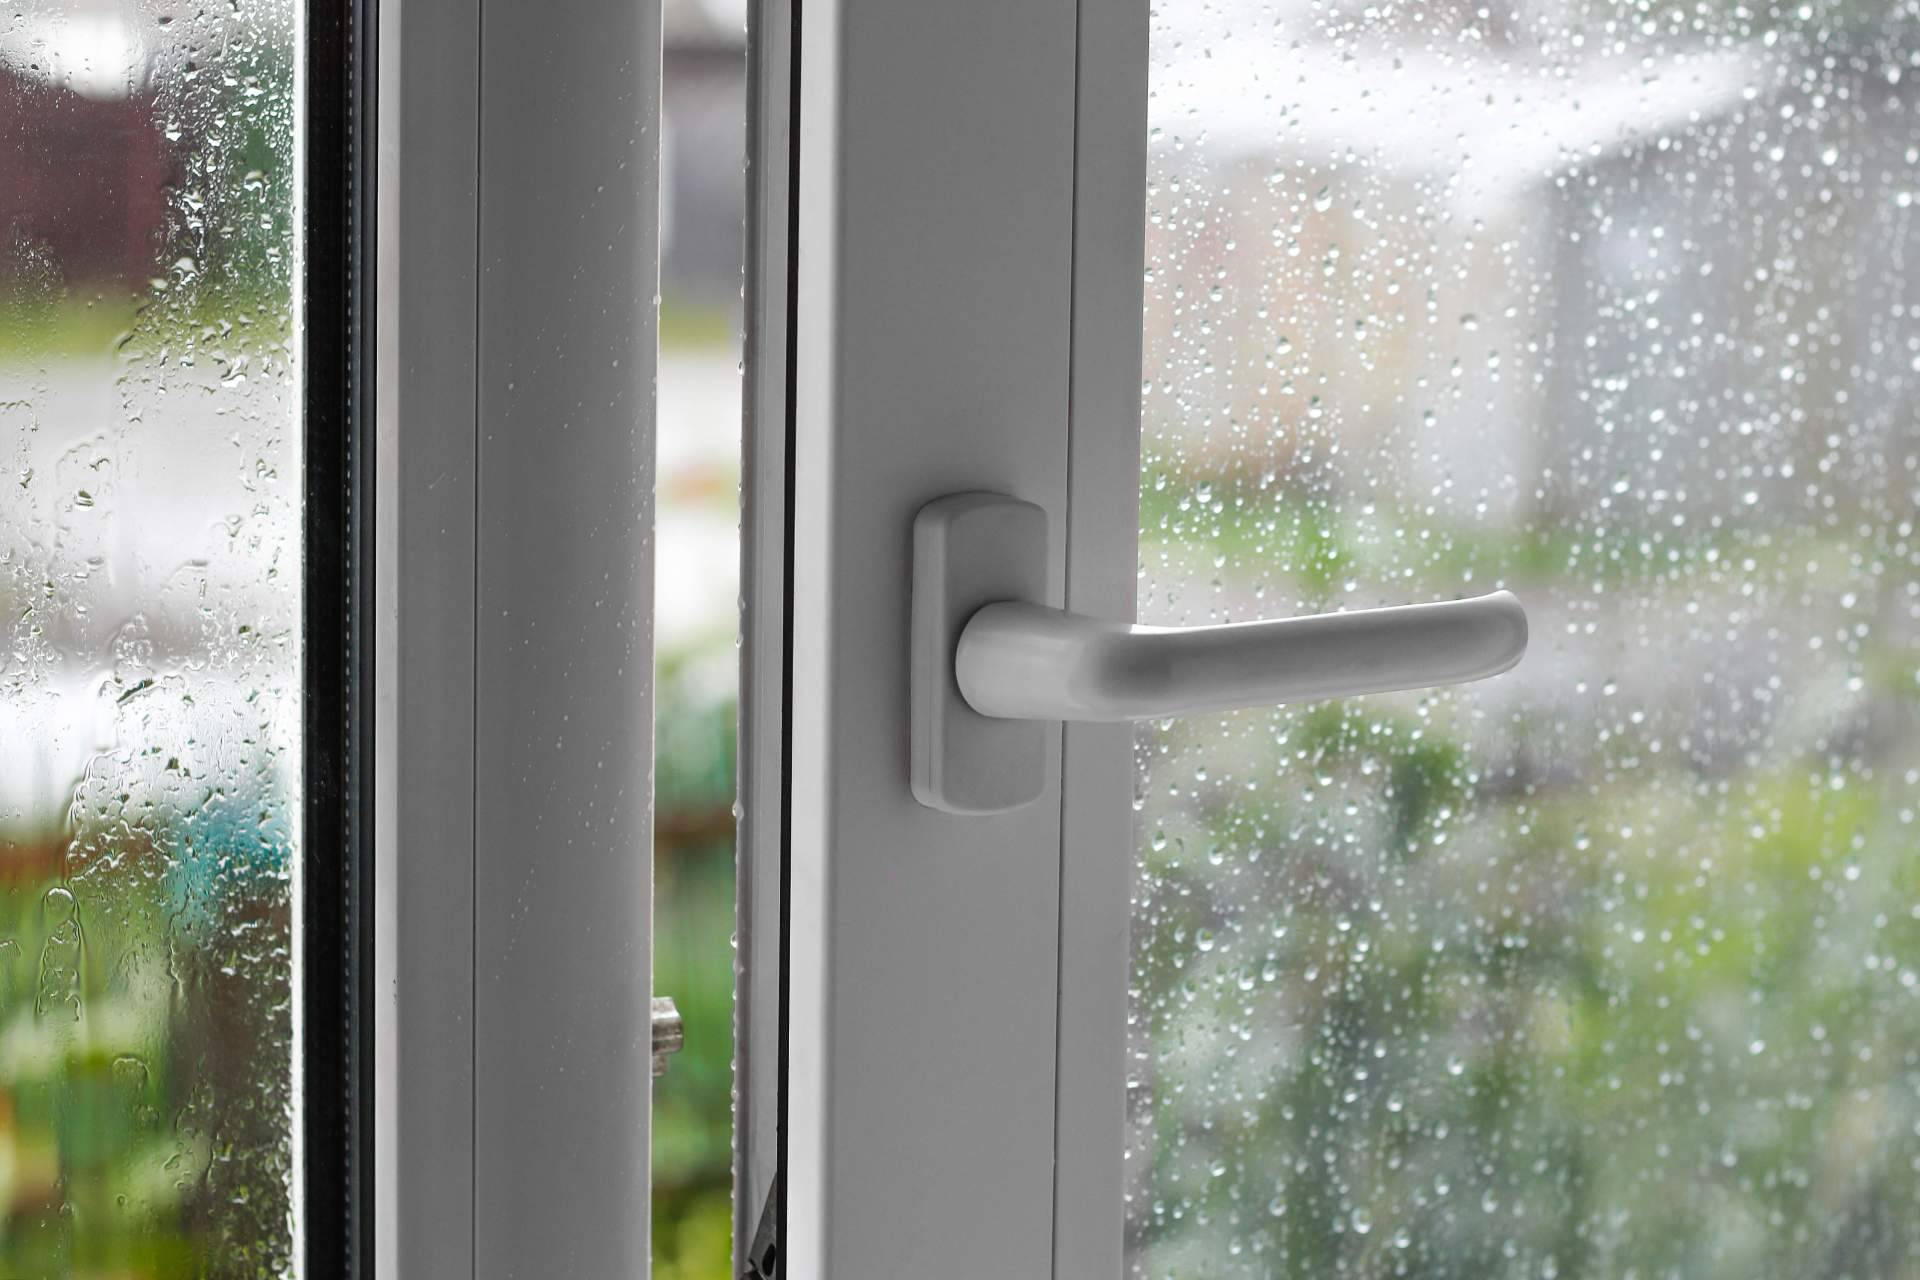 Cómo aislar las ventanas del frío: Consejos útiles y prácticos